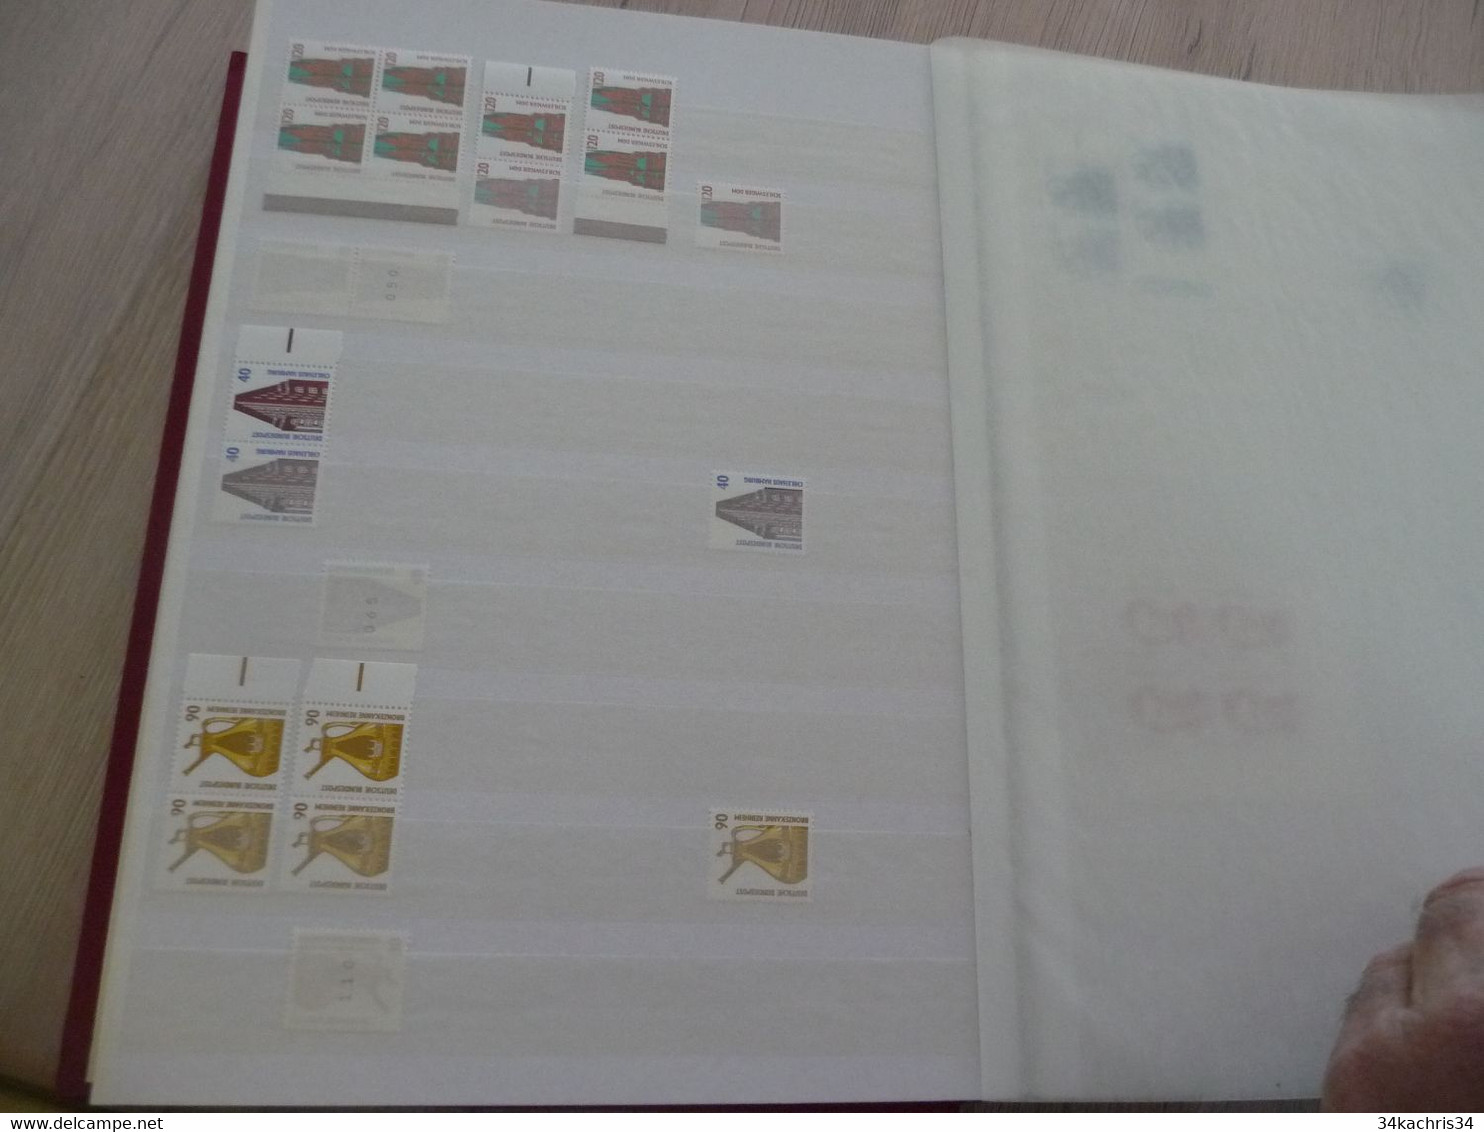 Allemagne Deutschland stock année 1988 à 990 surtout neuf carnet planche et multiple